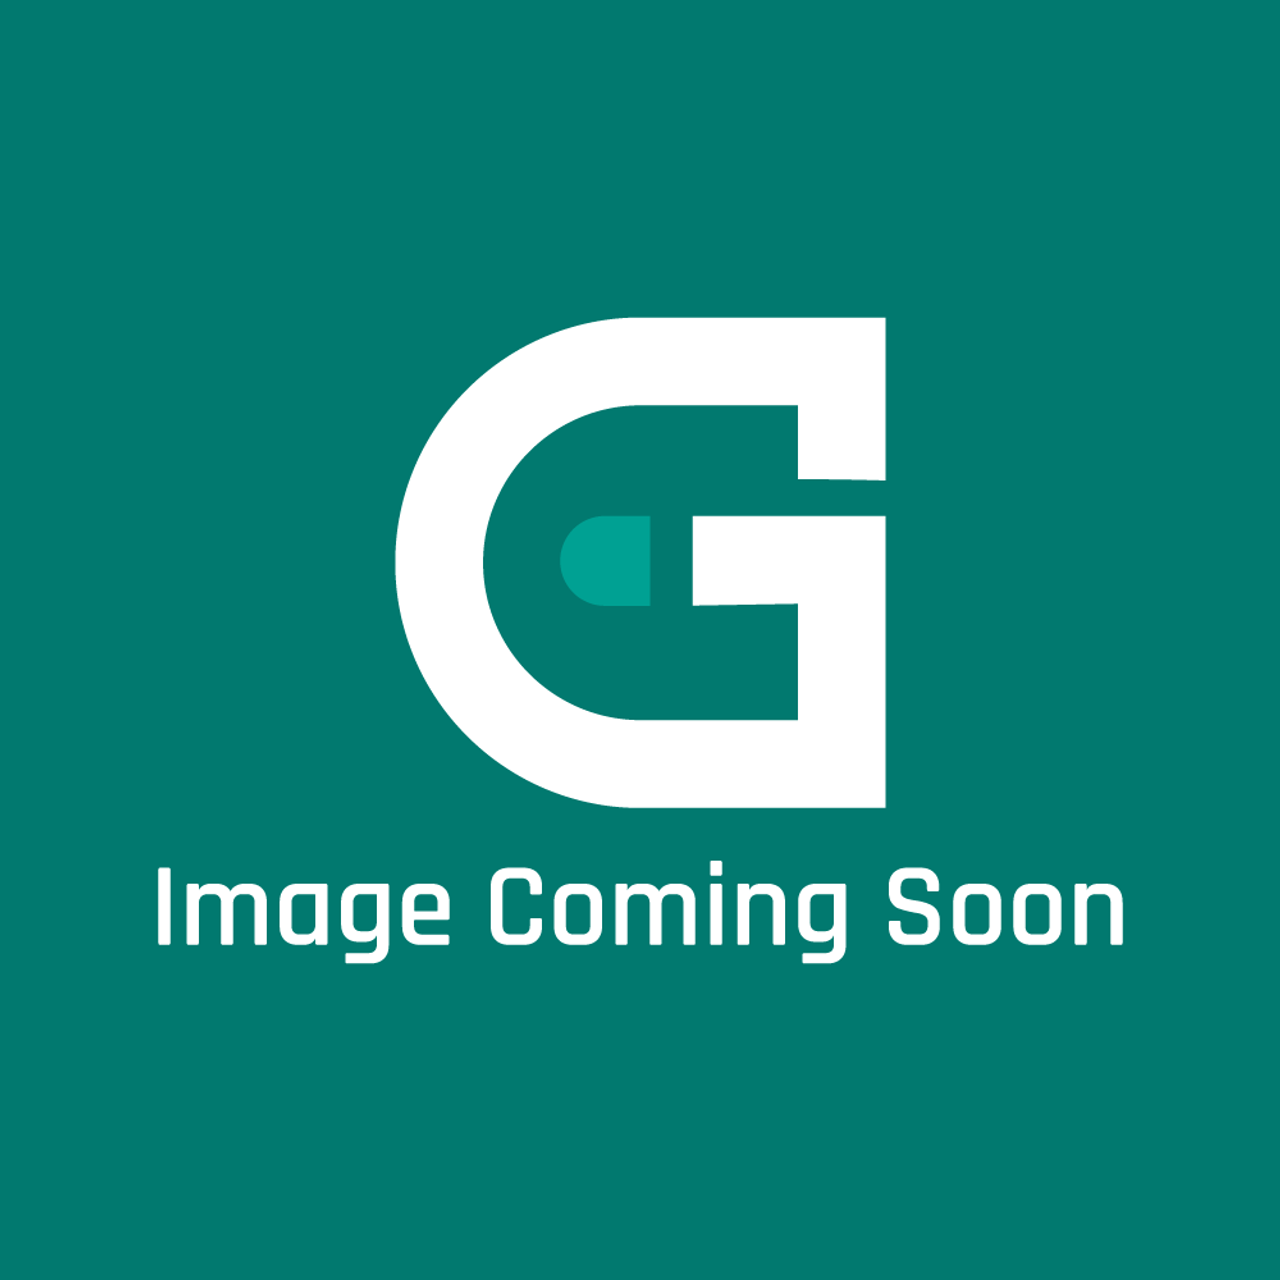 AGA SAG-A065688 - Kick Plate - Image Coming Soon!